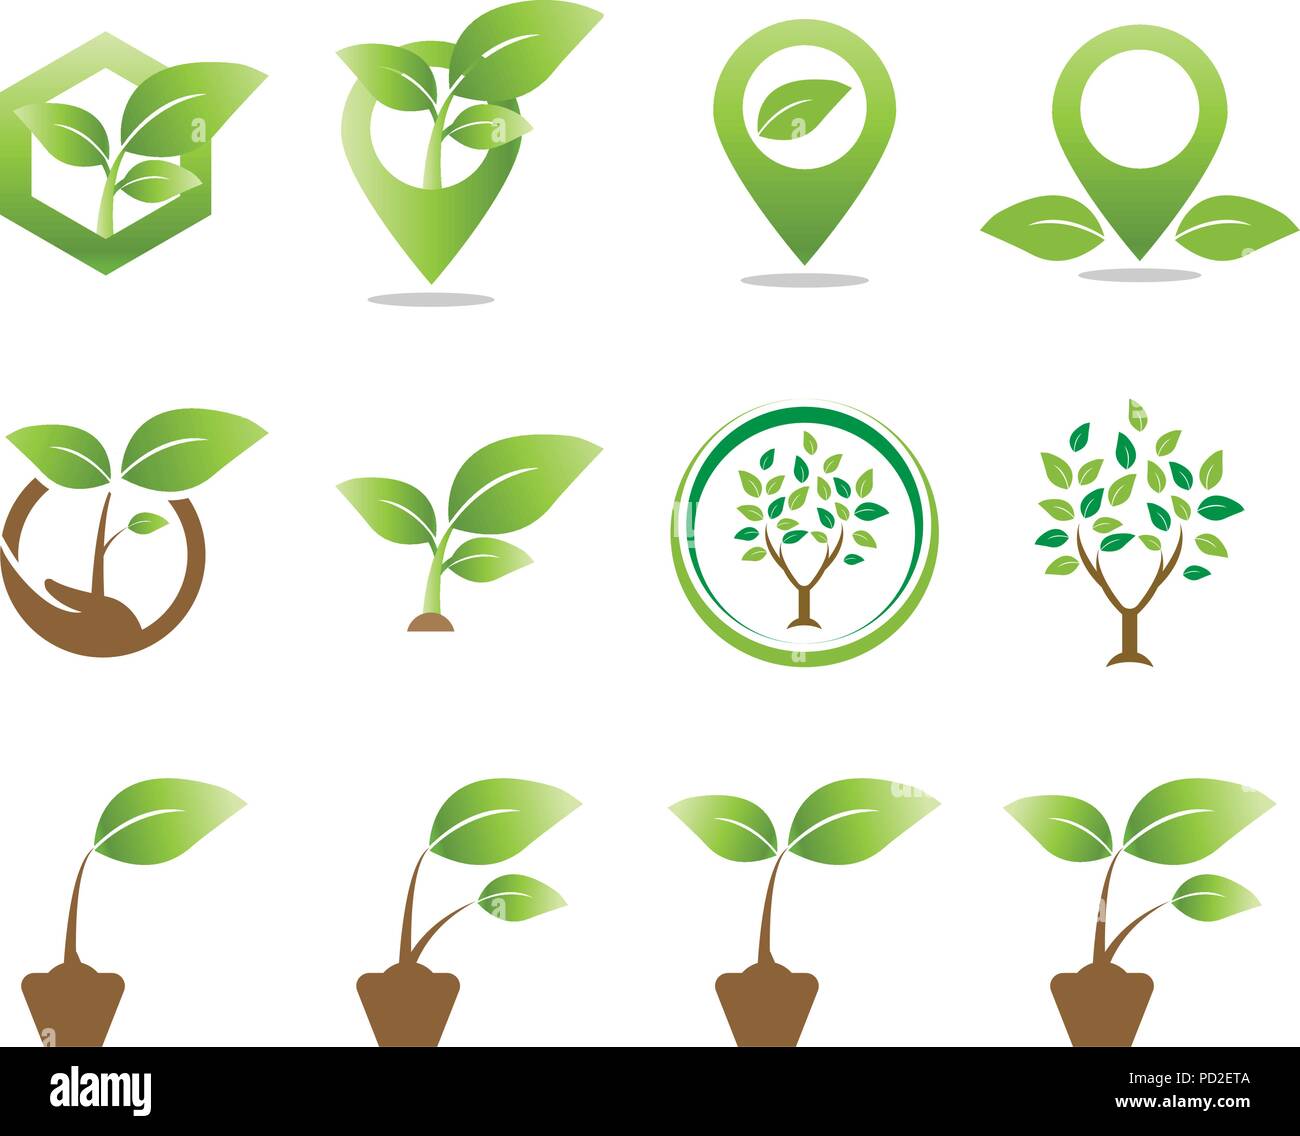 Sammlung Von Pflanzen Logo Icon Template Vector Element Stock Vektorgrafik Alamy